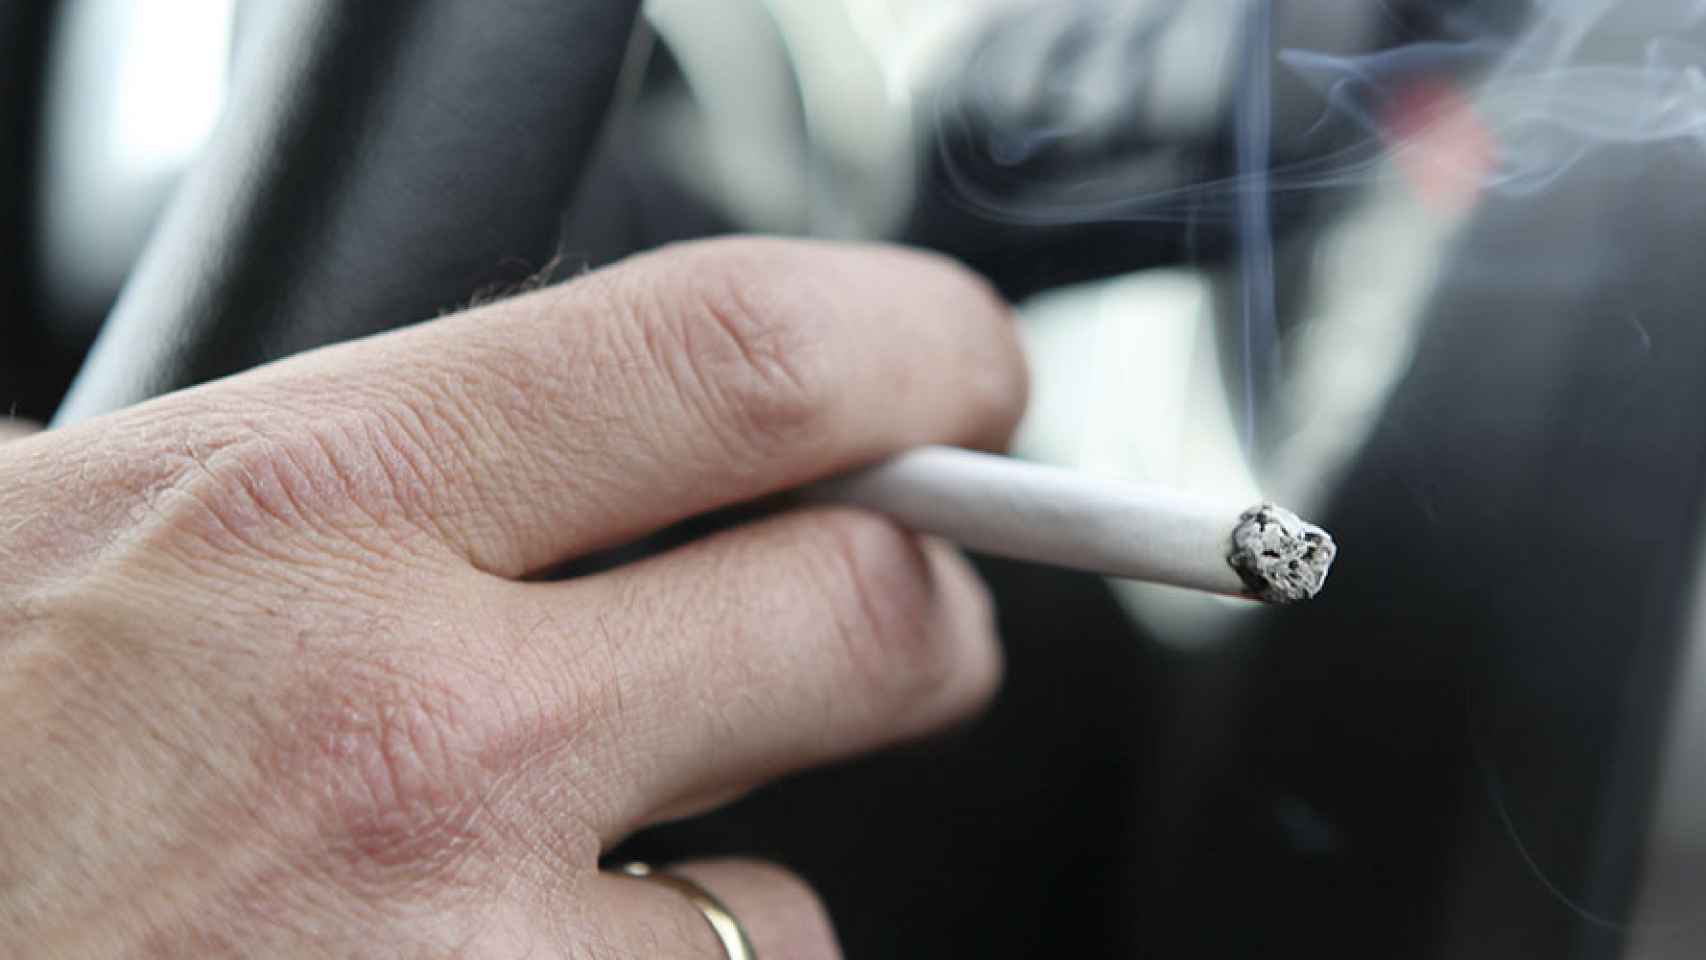 Una persona fumando en un coche.